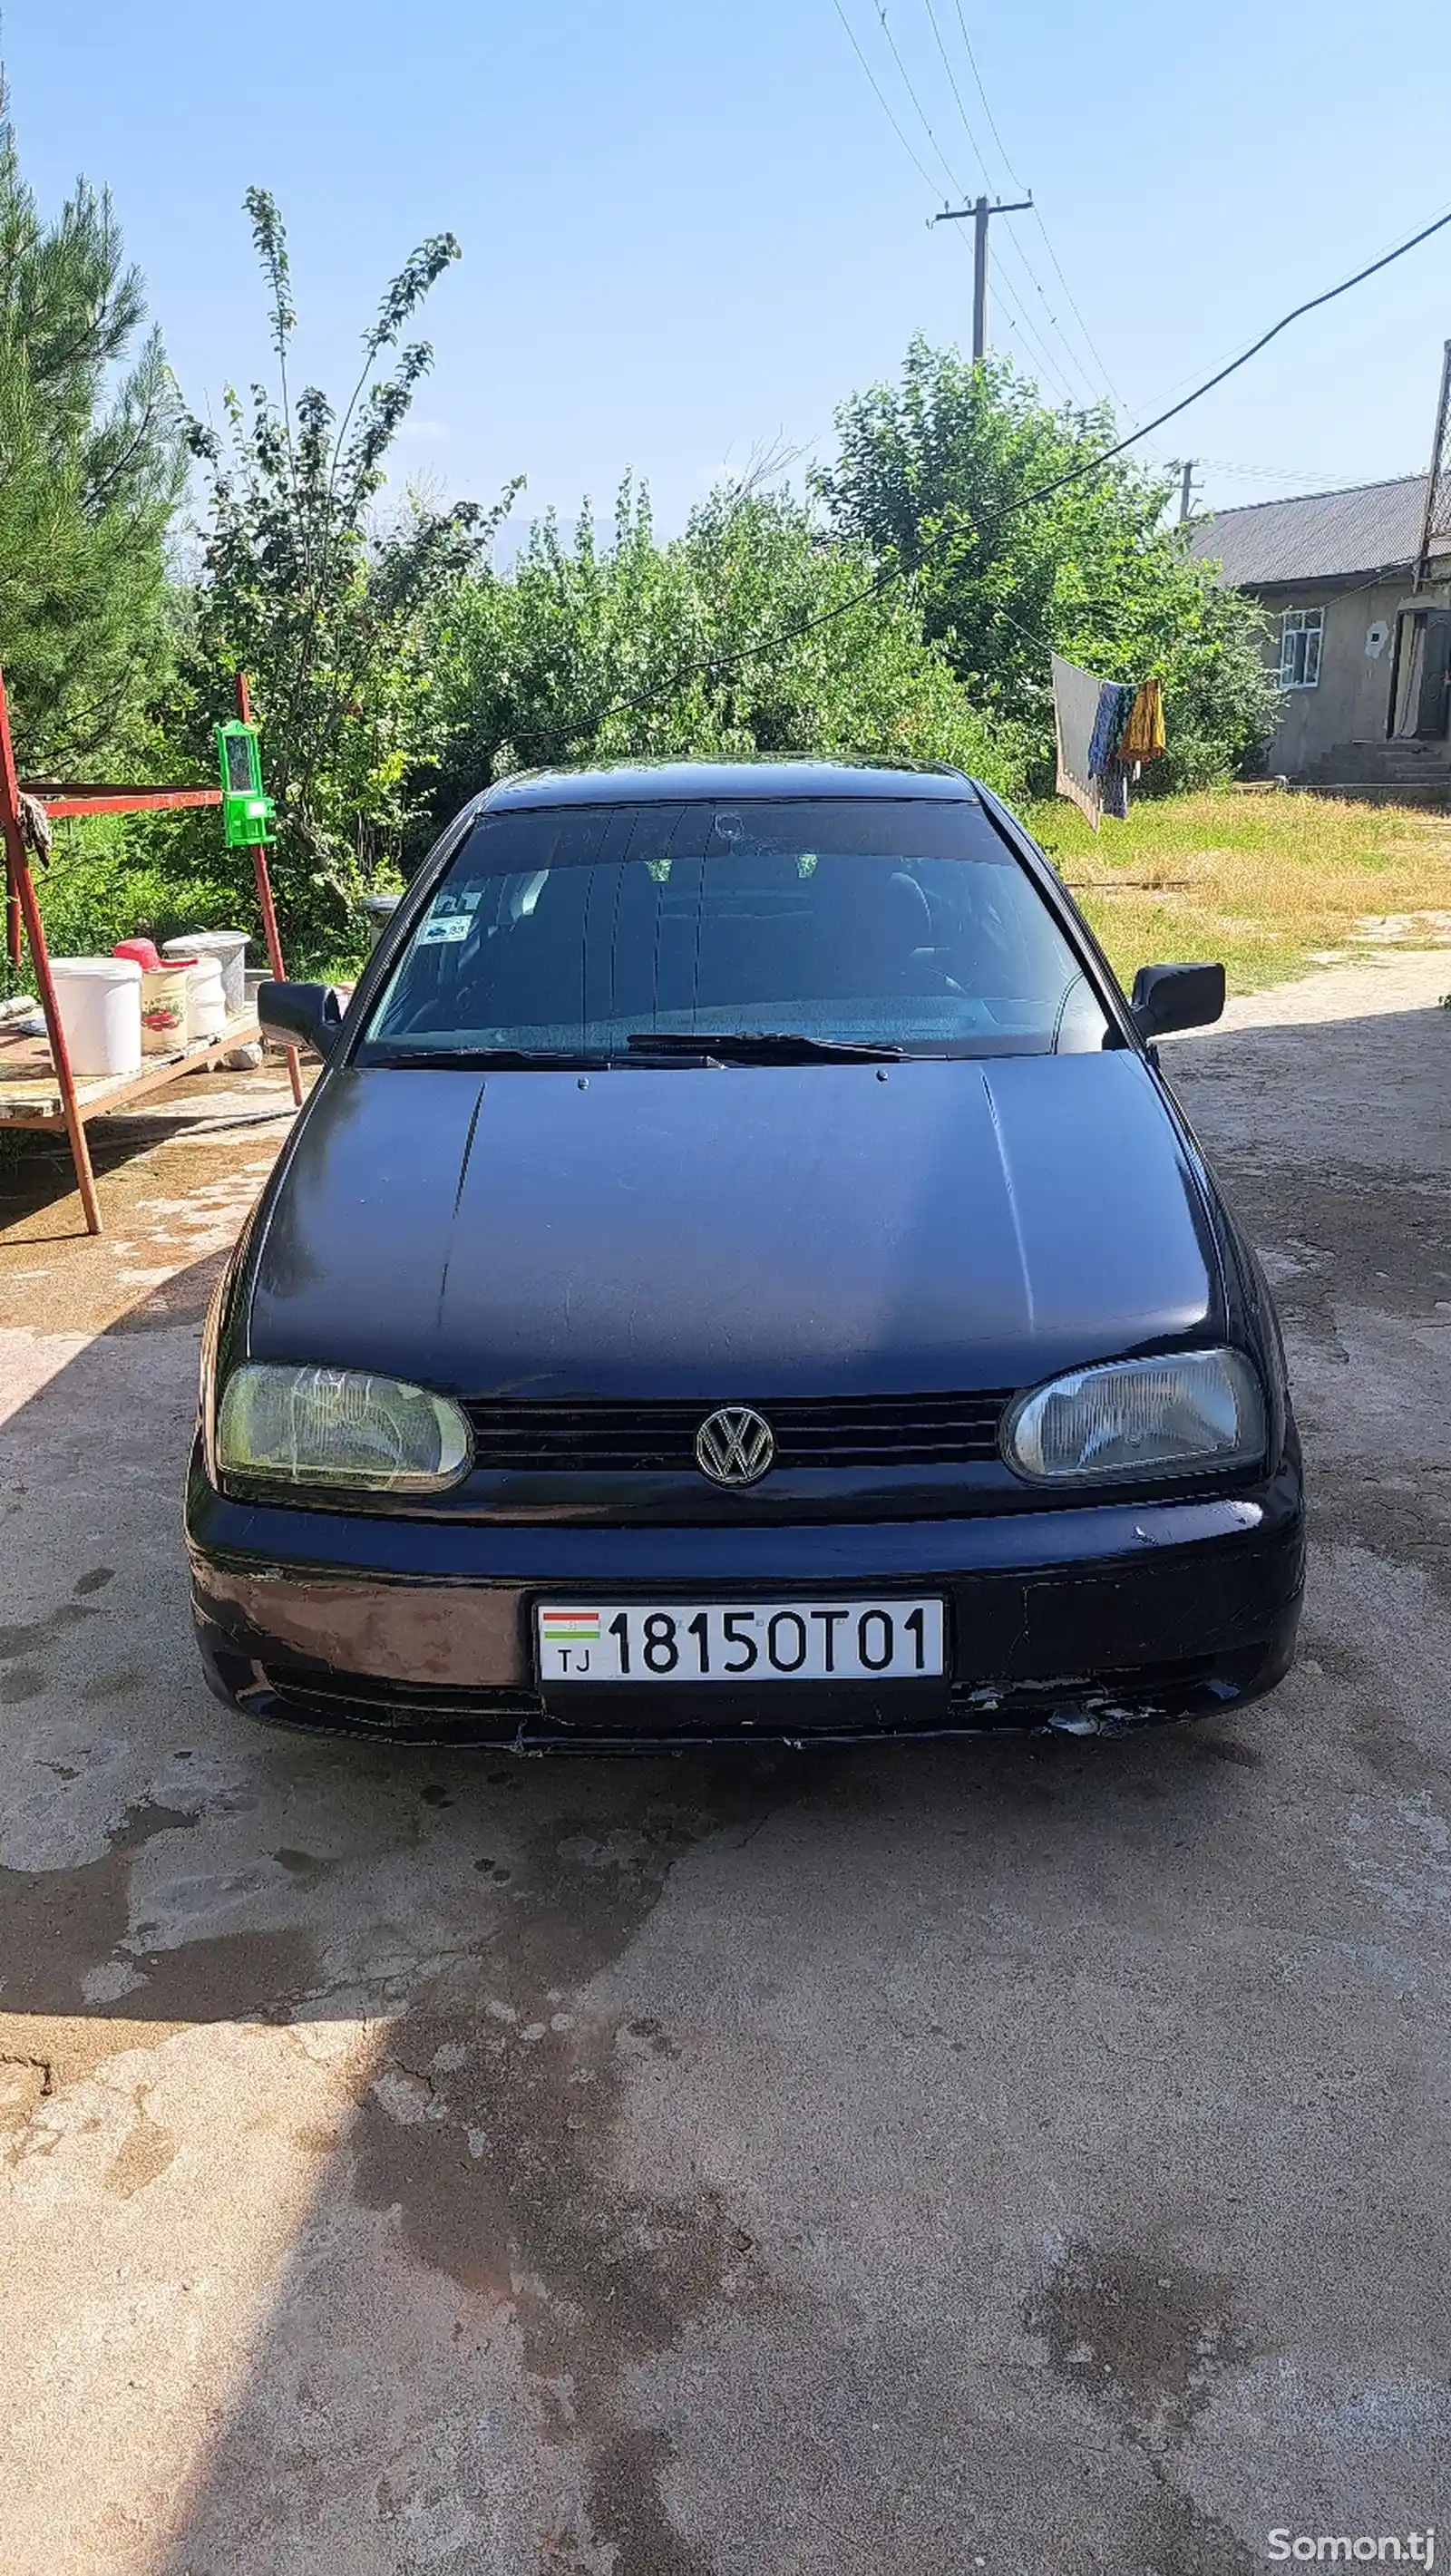 Volkswagen Golf, 1997-1